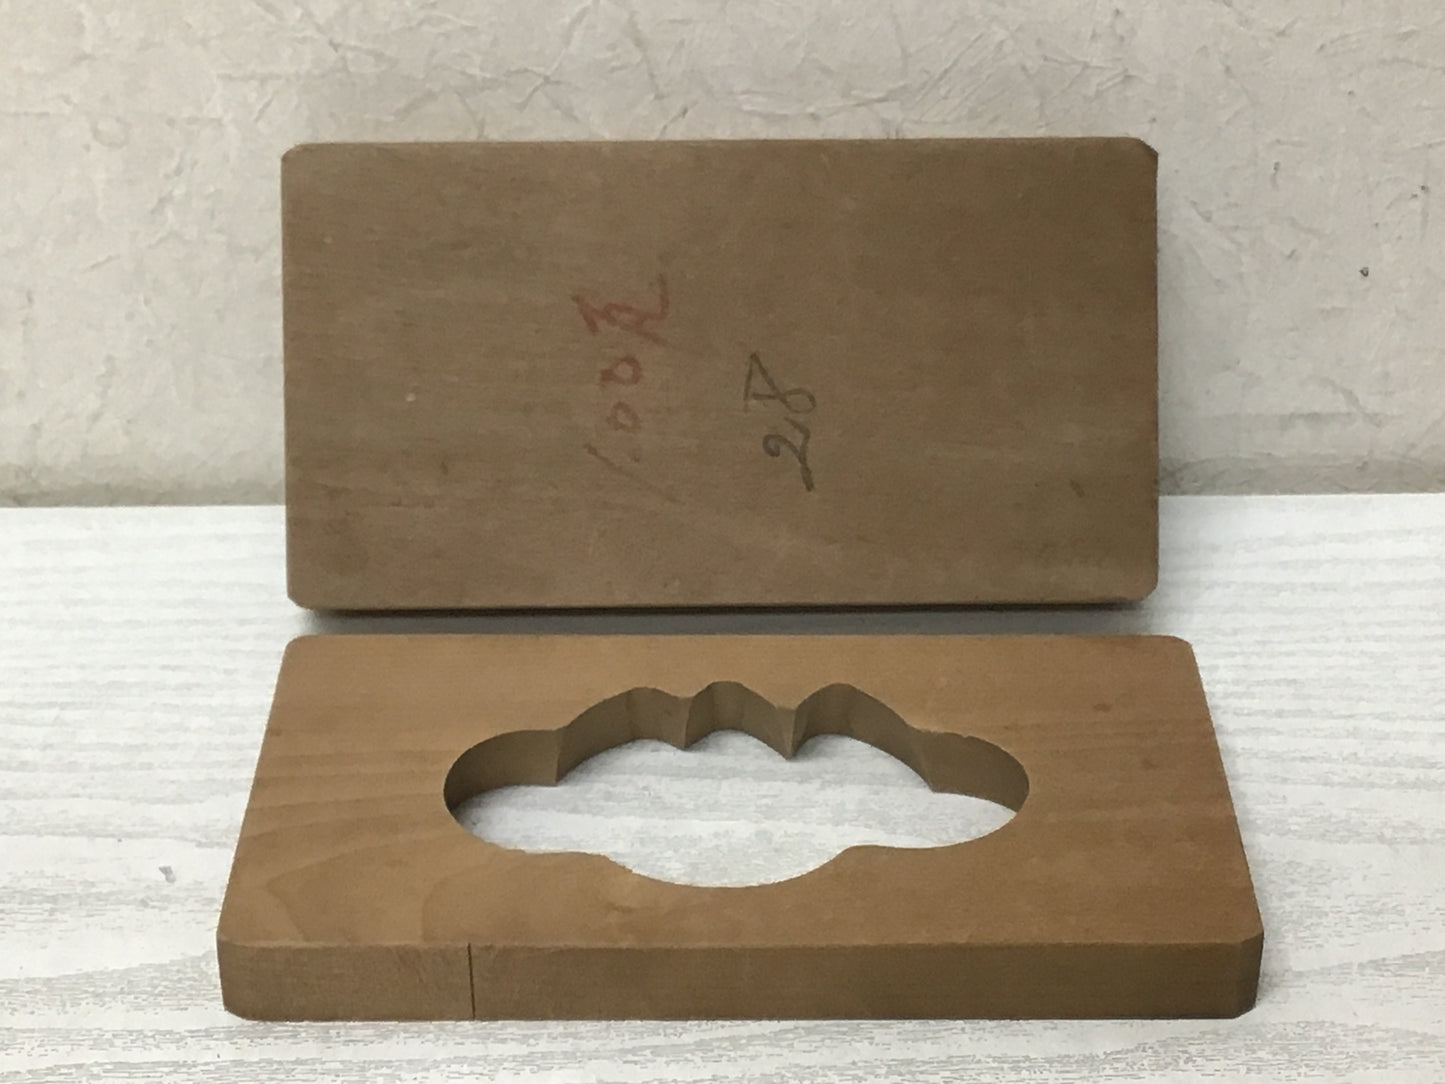 Y1939 KASHIGATA Kuwai arrowhead Japanese vintage Wooden Pastry Mold wagashi